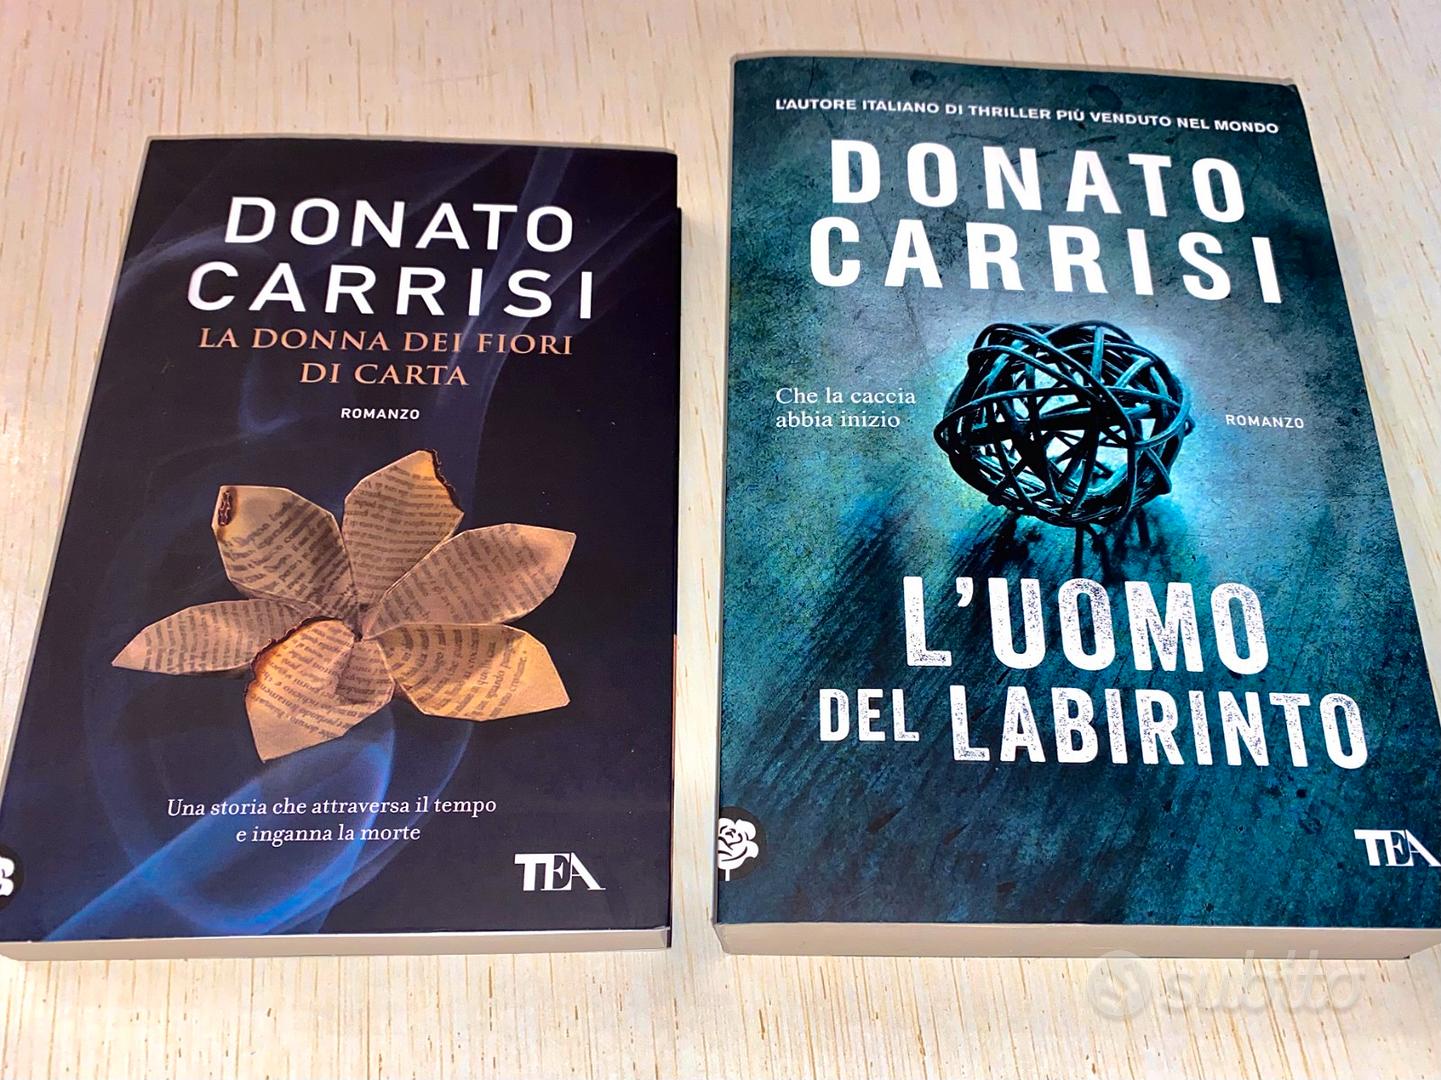 Donato Carrisi: Libri e opere in offerta